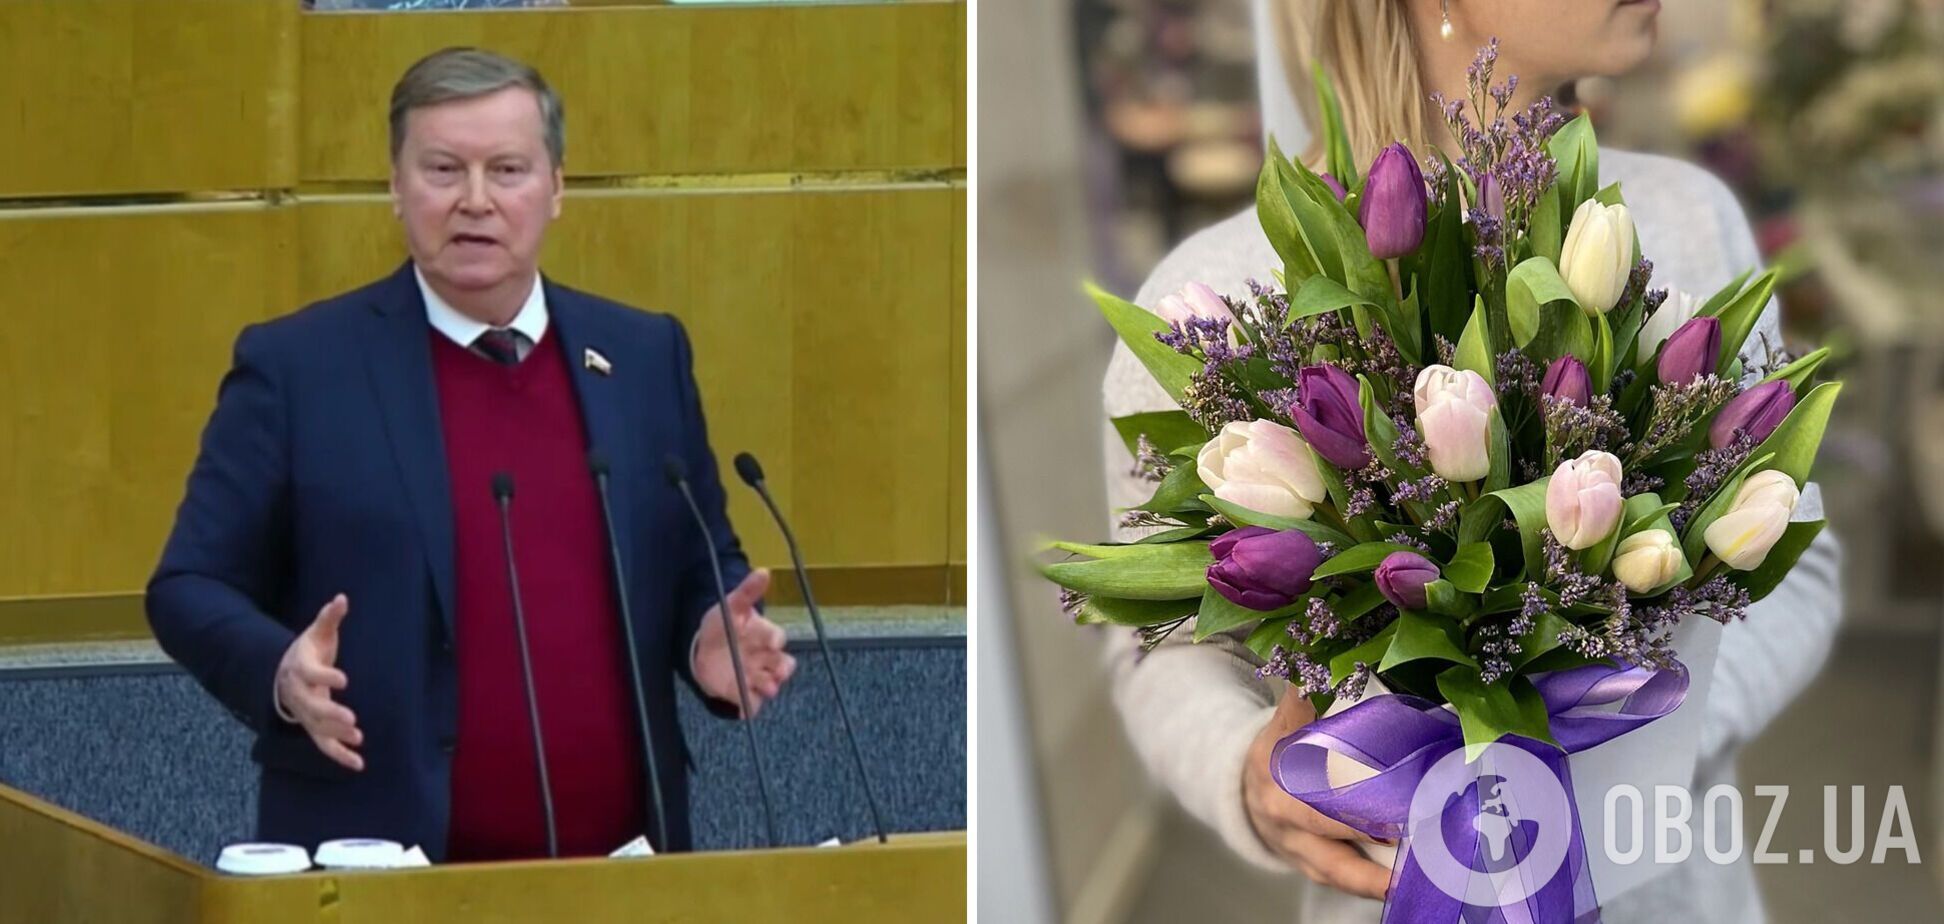 'Купив тюльпани на 8 березня – профінансував поставки снарядів ЗСУ': у Росії знайшли 'зраду' в квітах для жінок. Відео